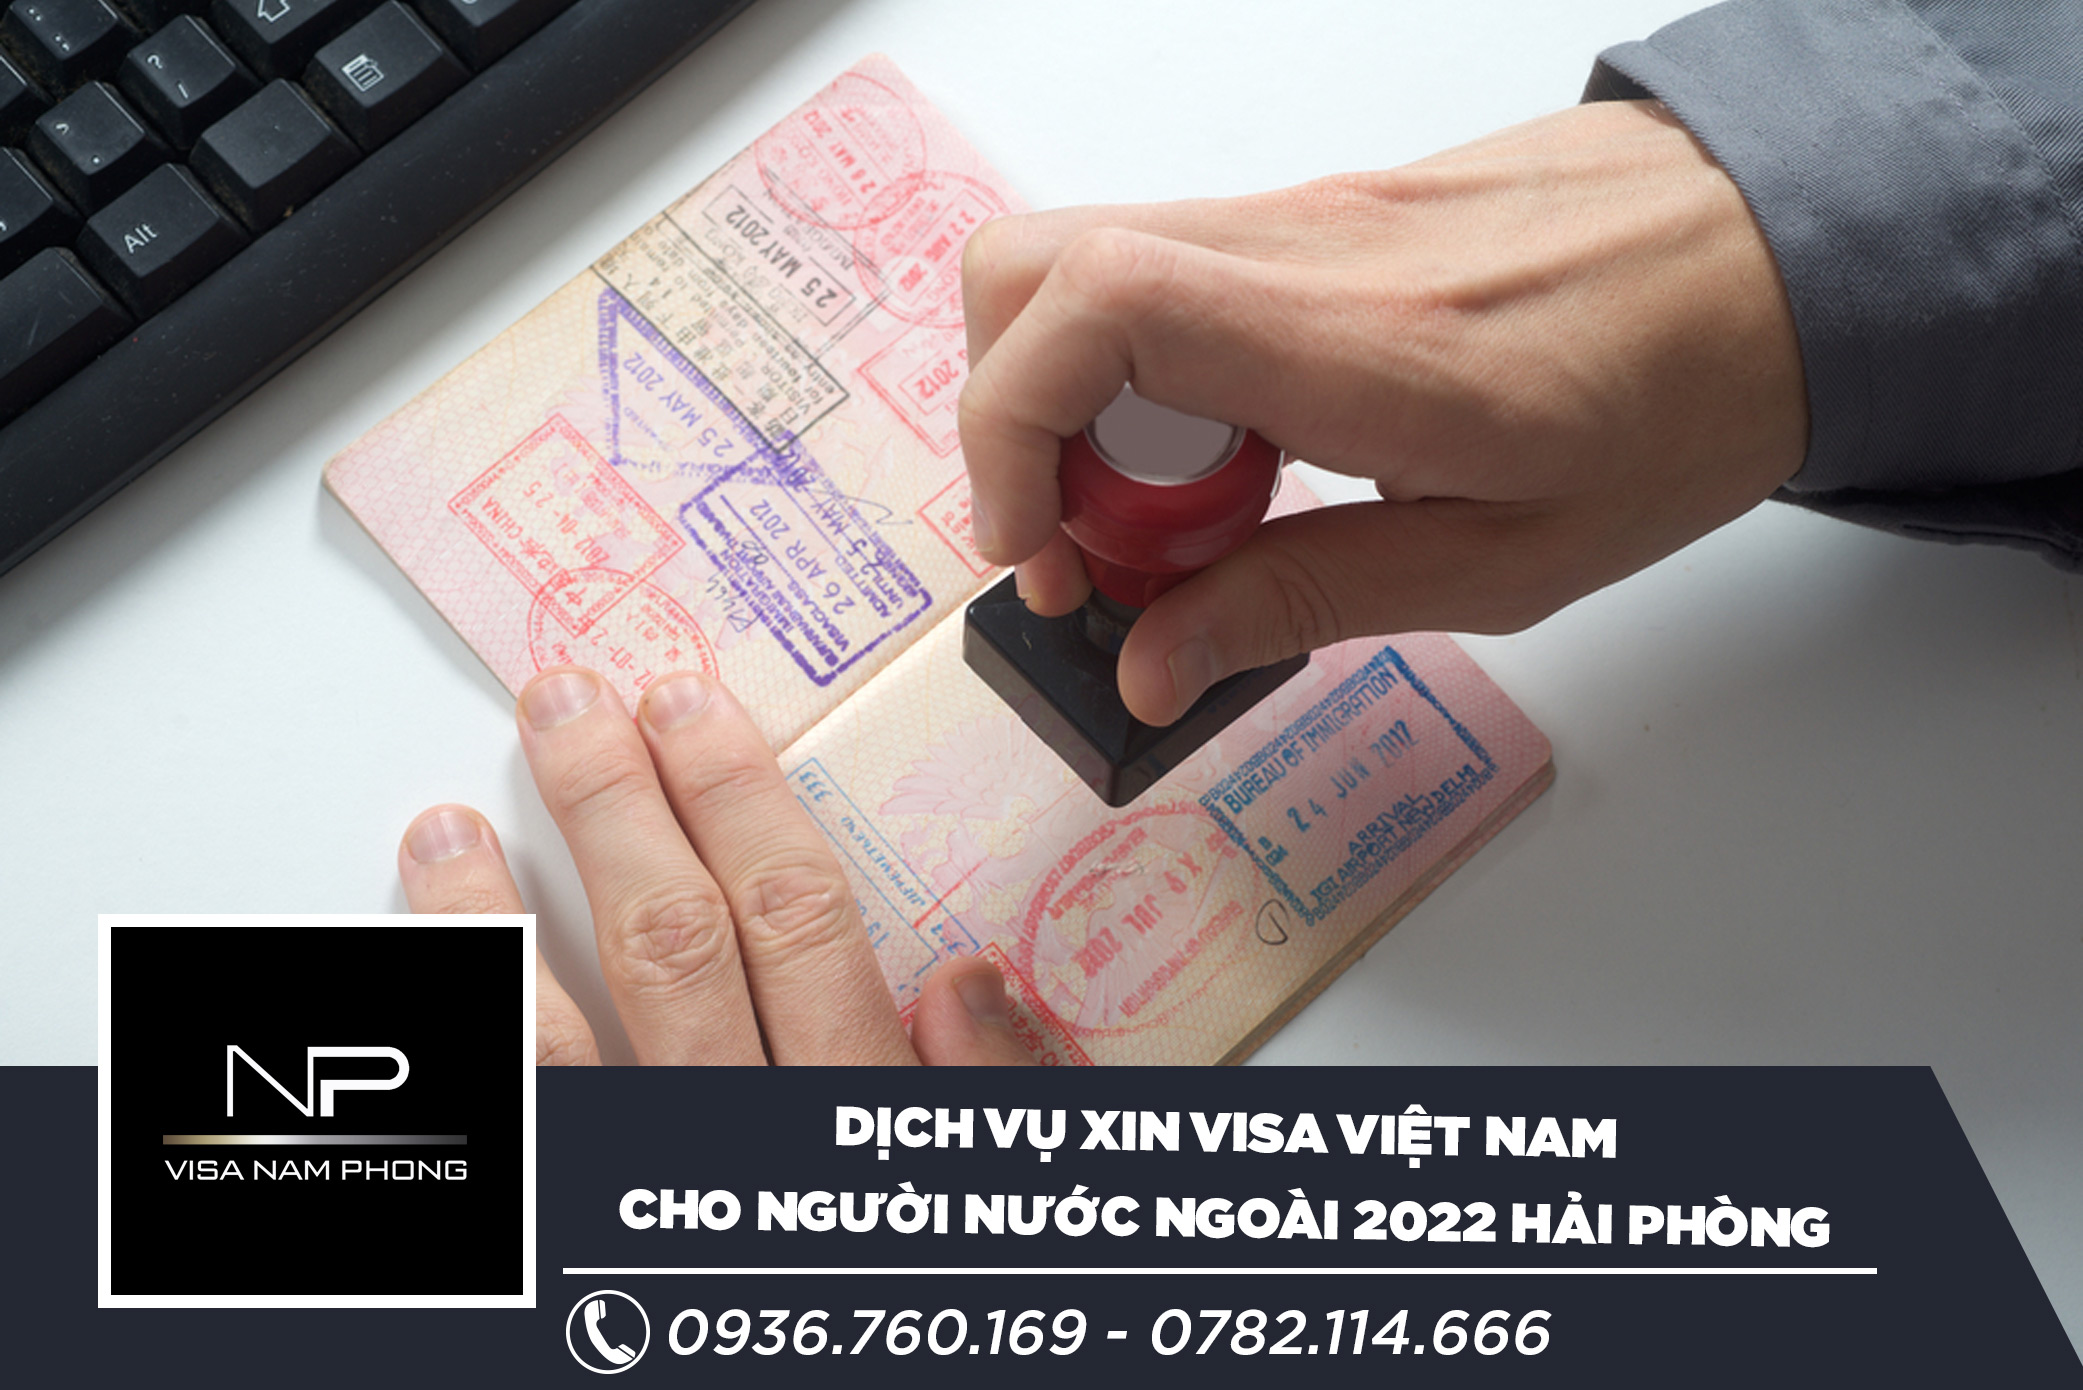 Dịch vụ xin visa Việt Nam cho người nước ngoài 2022 Hải Phòng